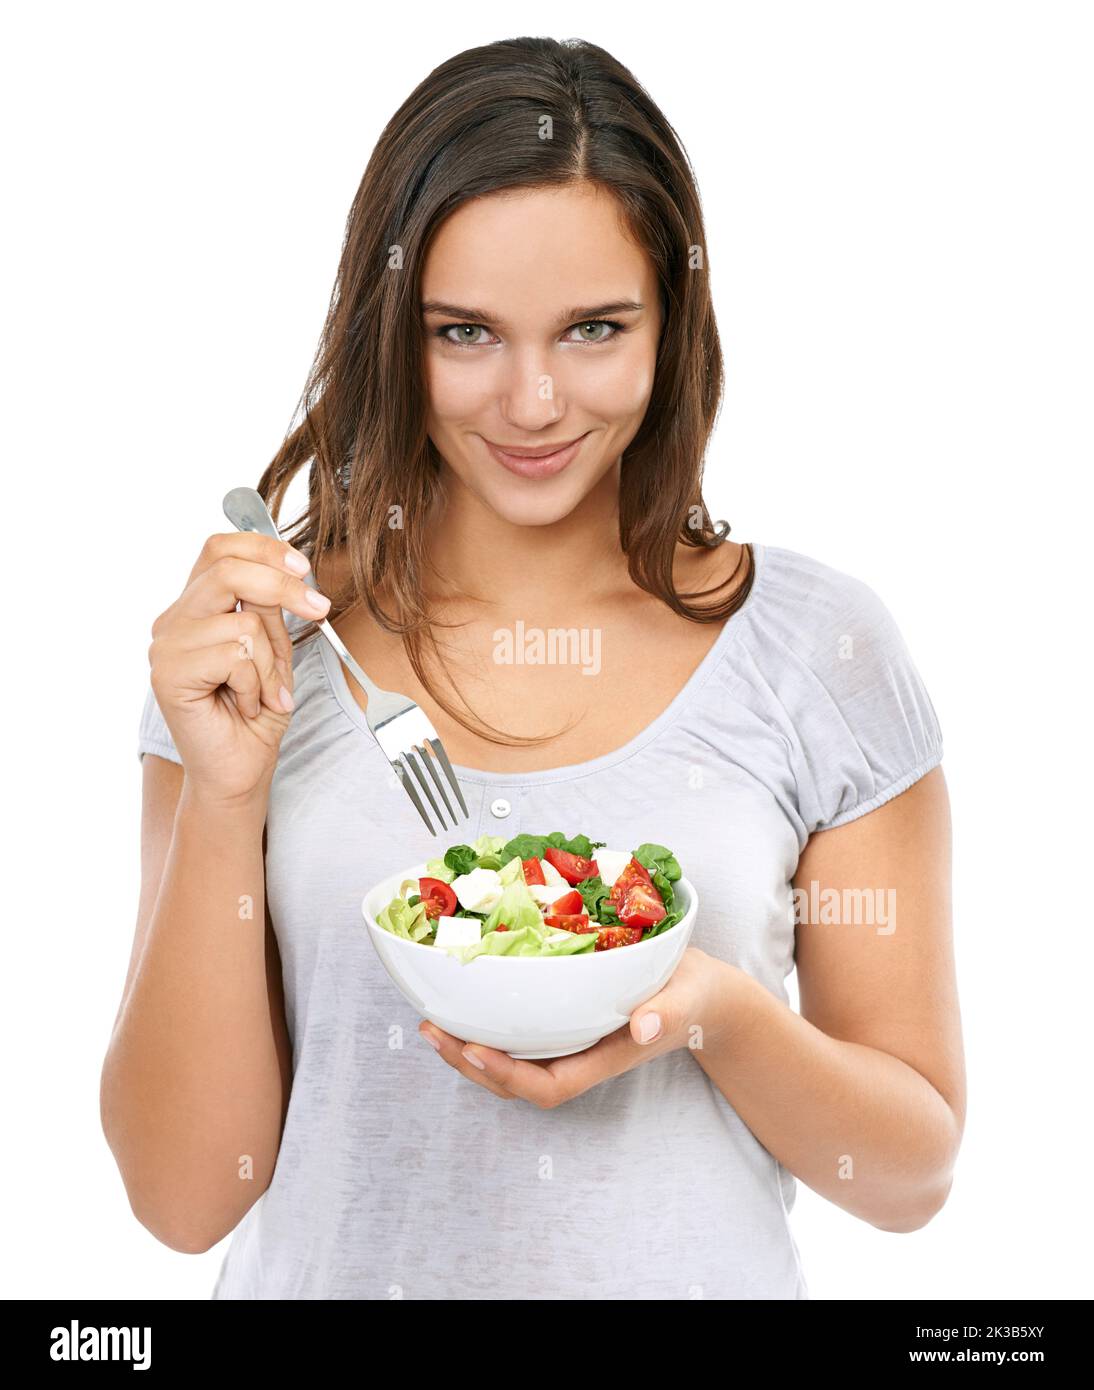 Un en-cas sain. Portrait d'une jeune femme qui apprécie une salade fraîche. Banque D'Images